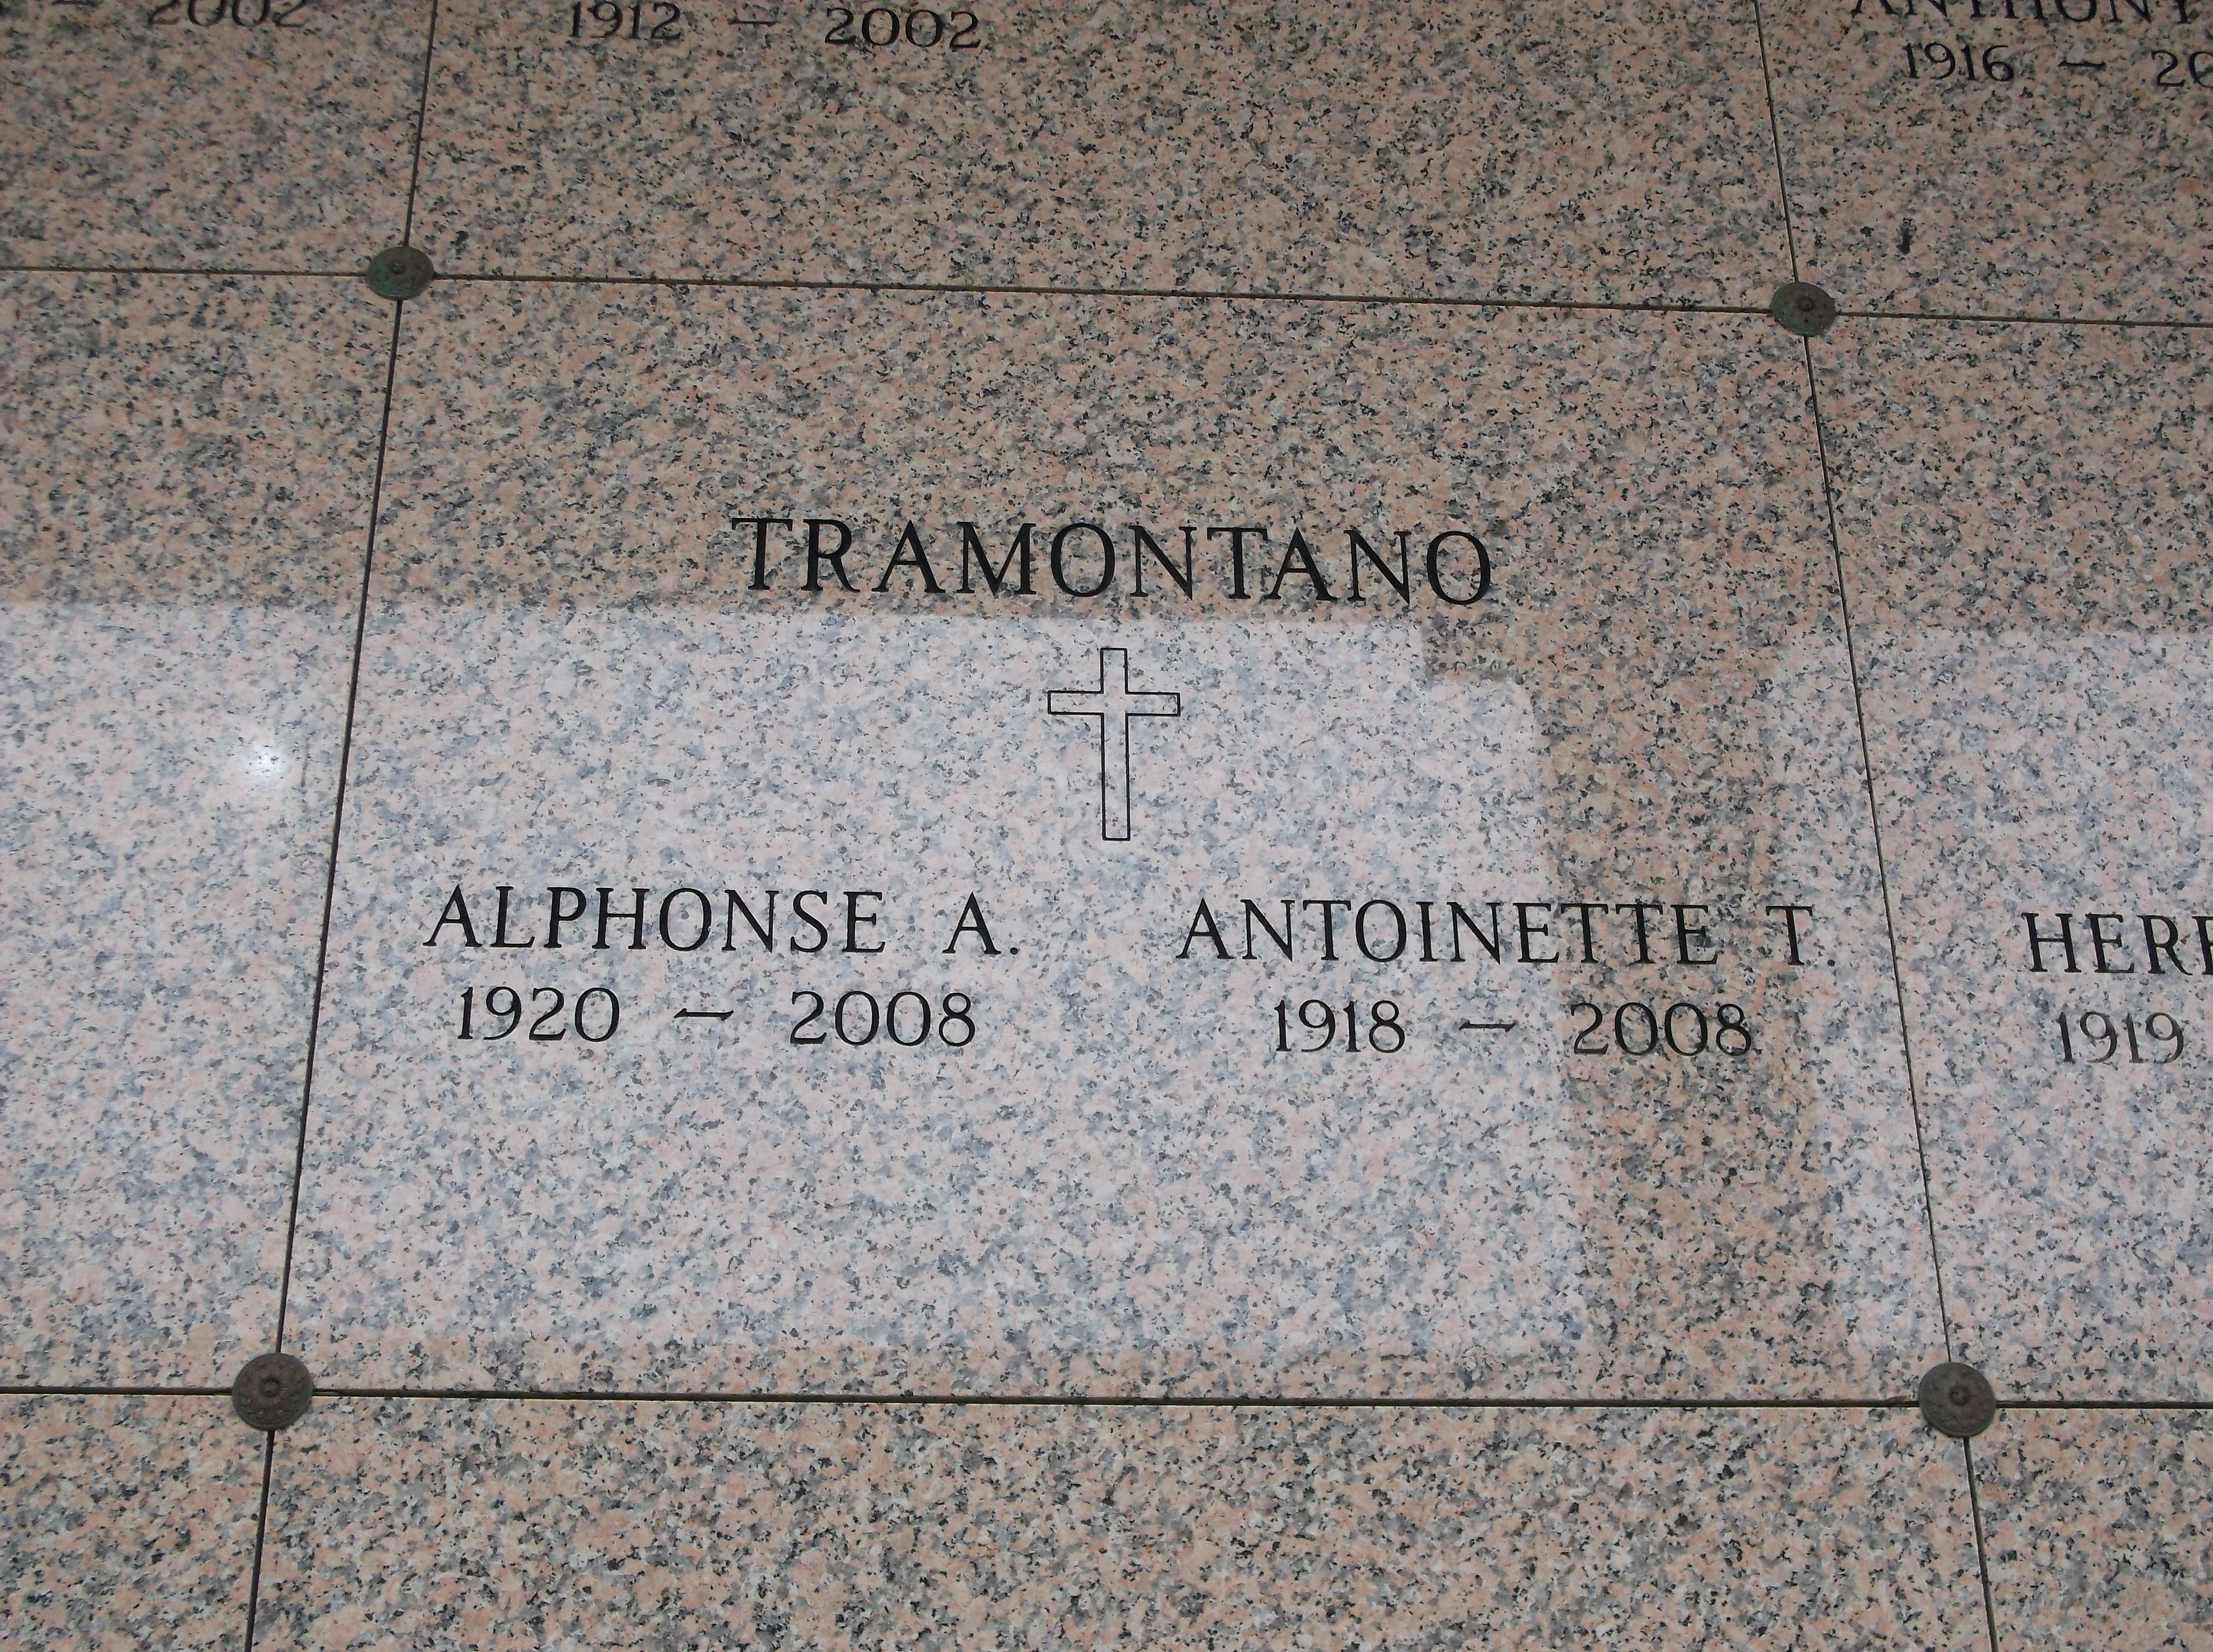 Alphonse A Tramontano